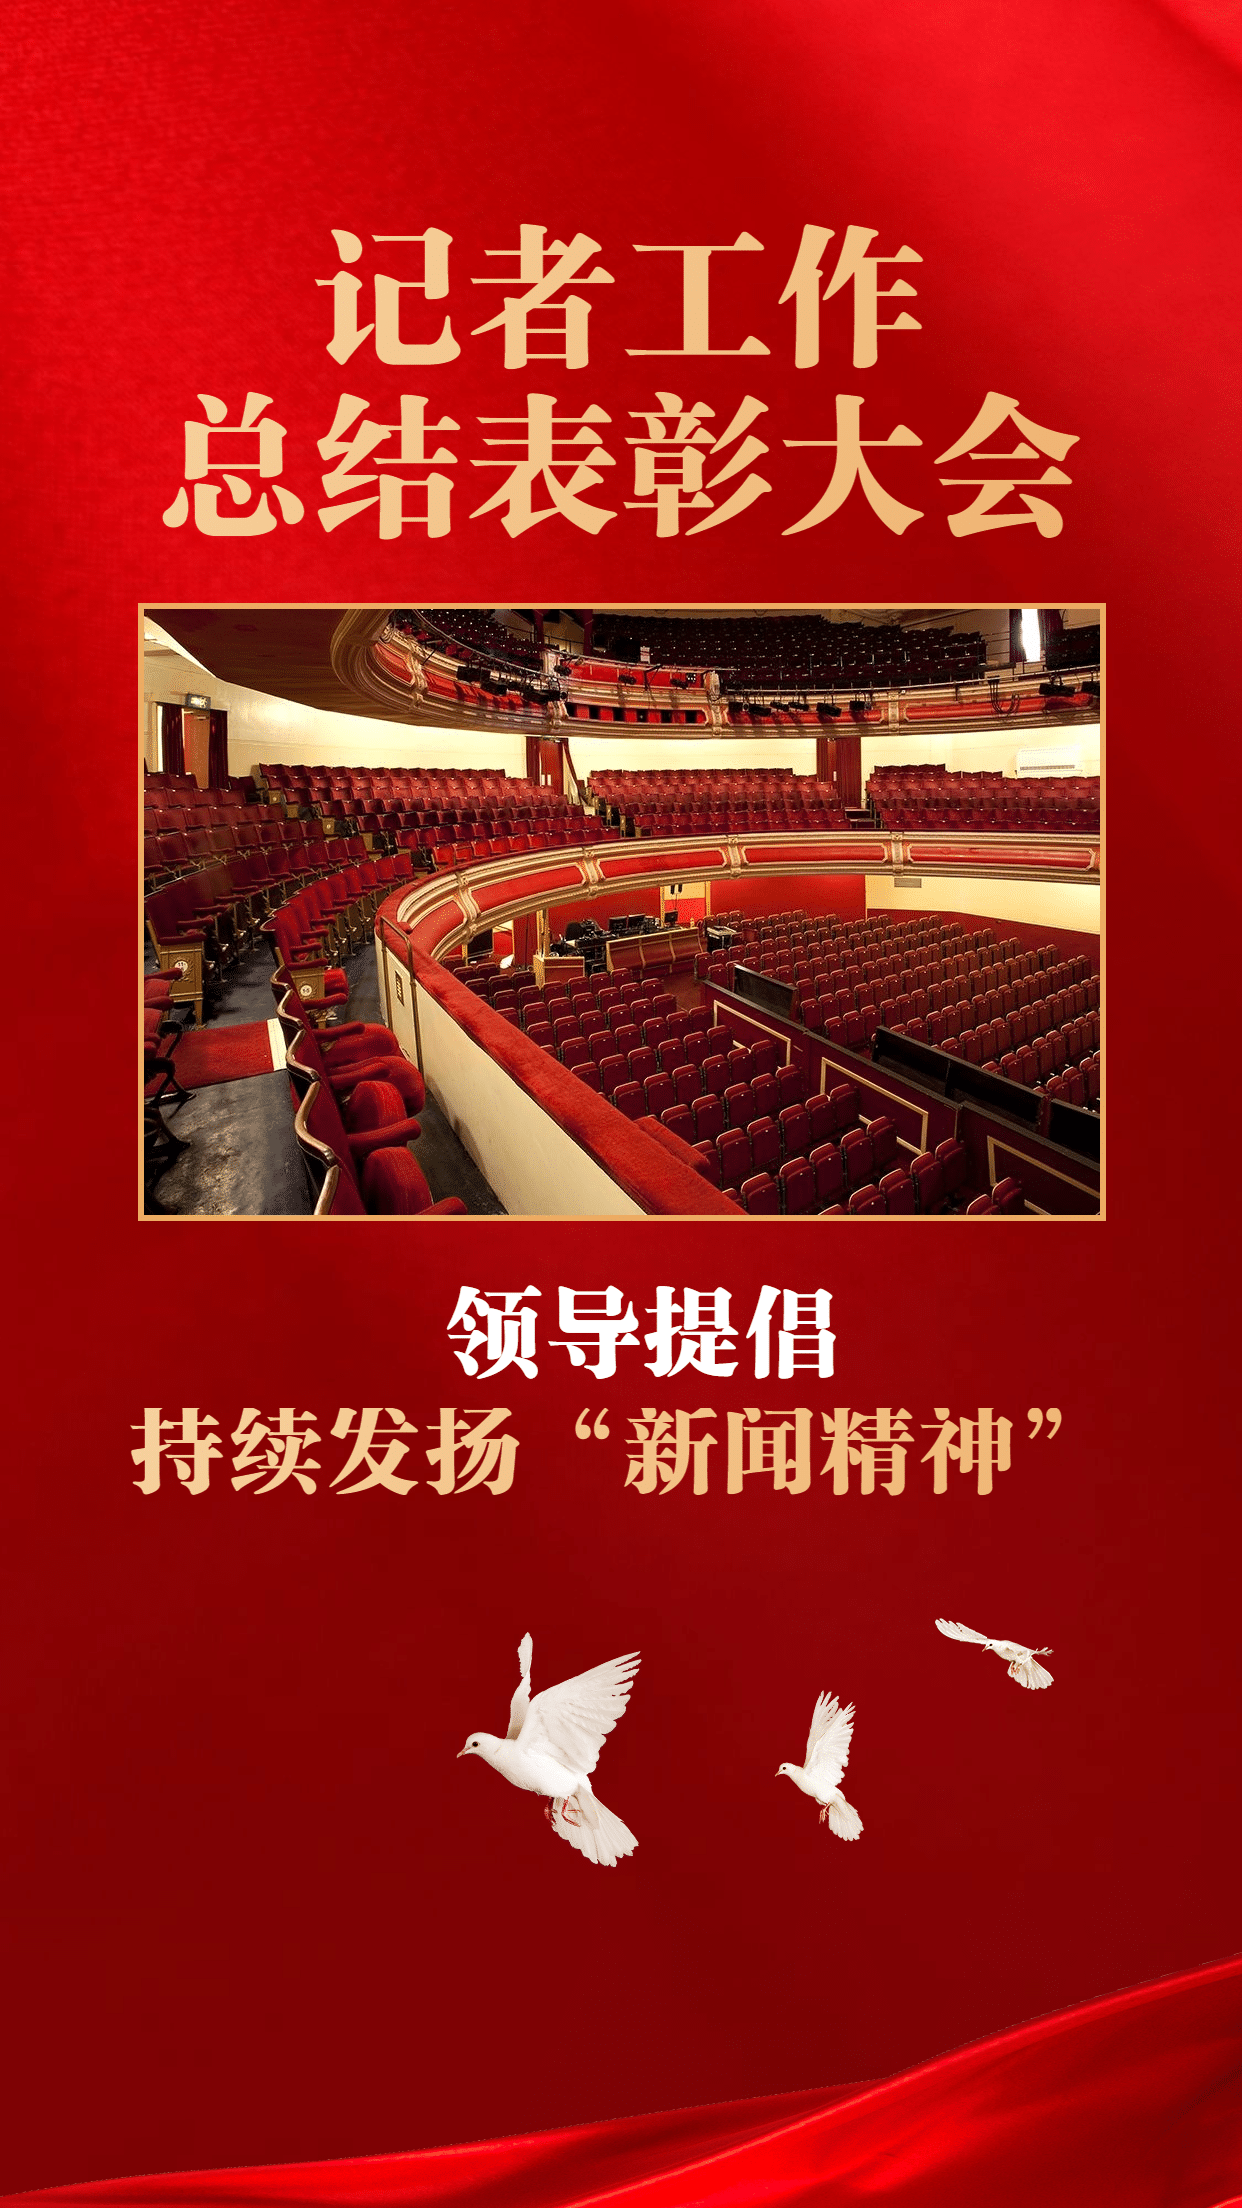 政务媒体中国记者节新闻精神会议表彰政务风手机海报